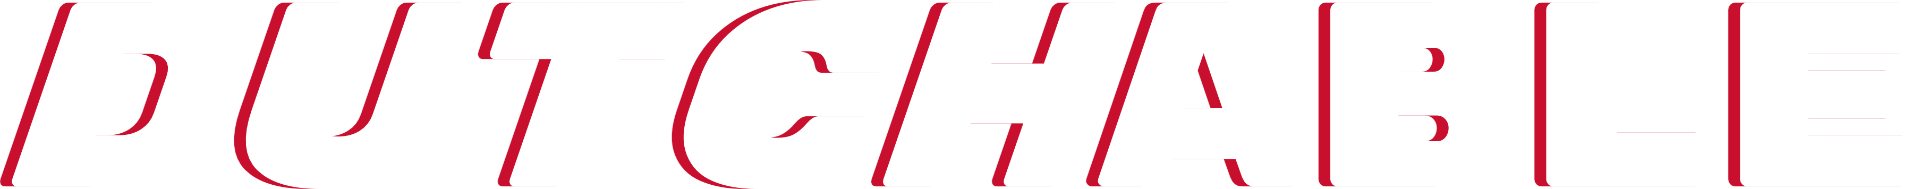 Dutchable text logo